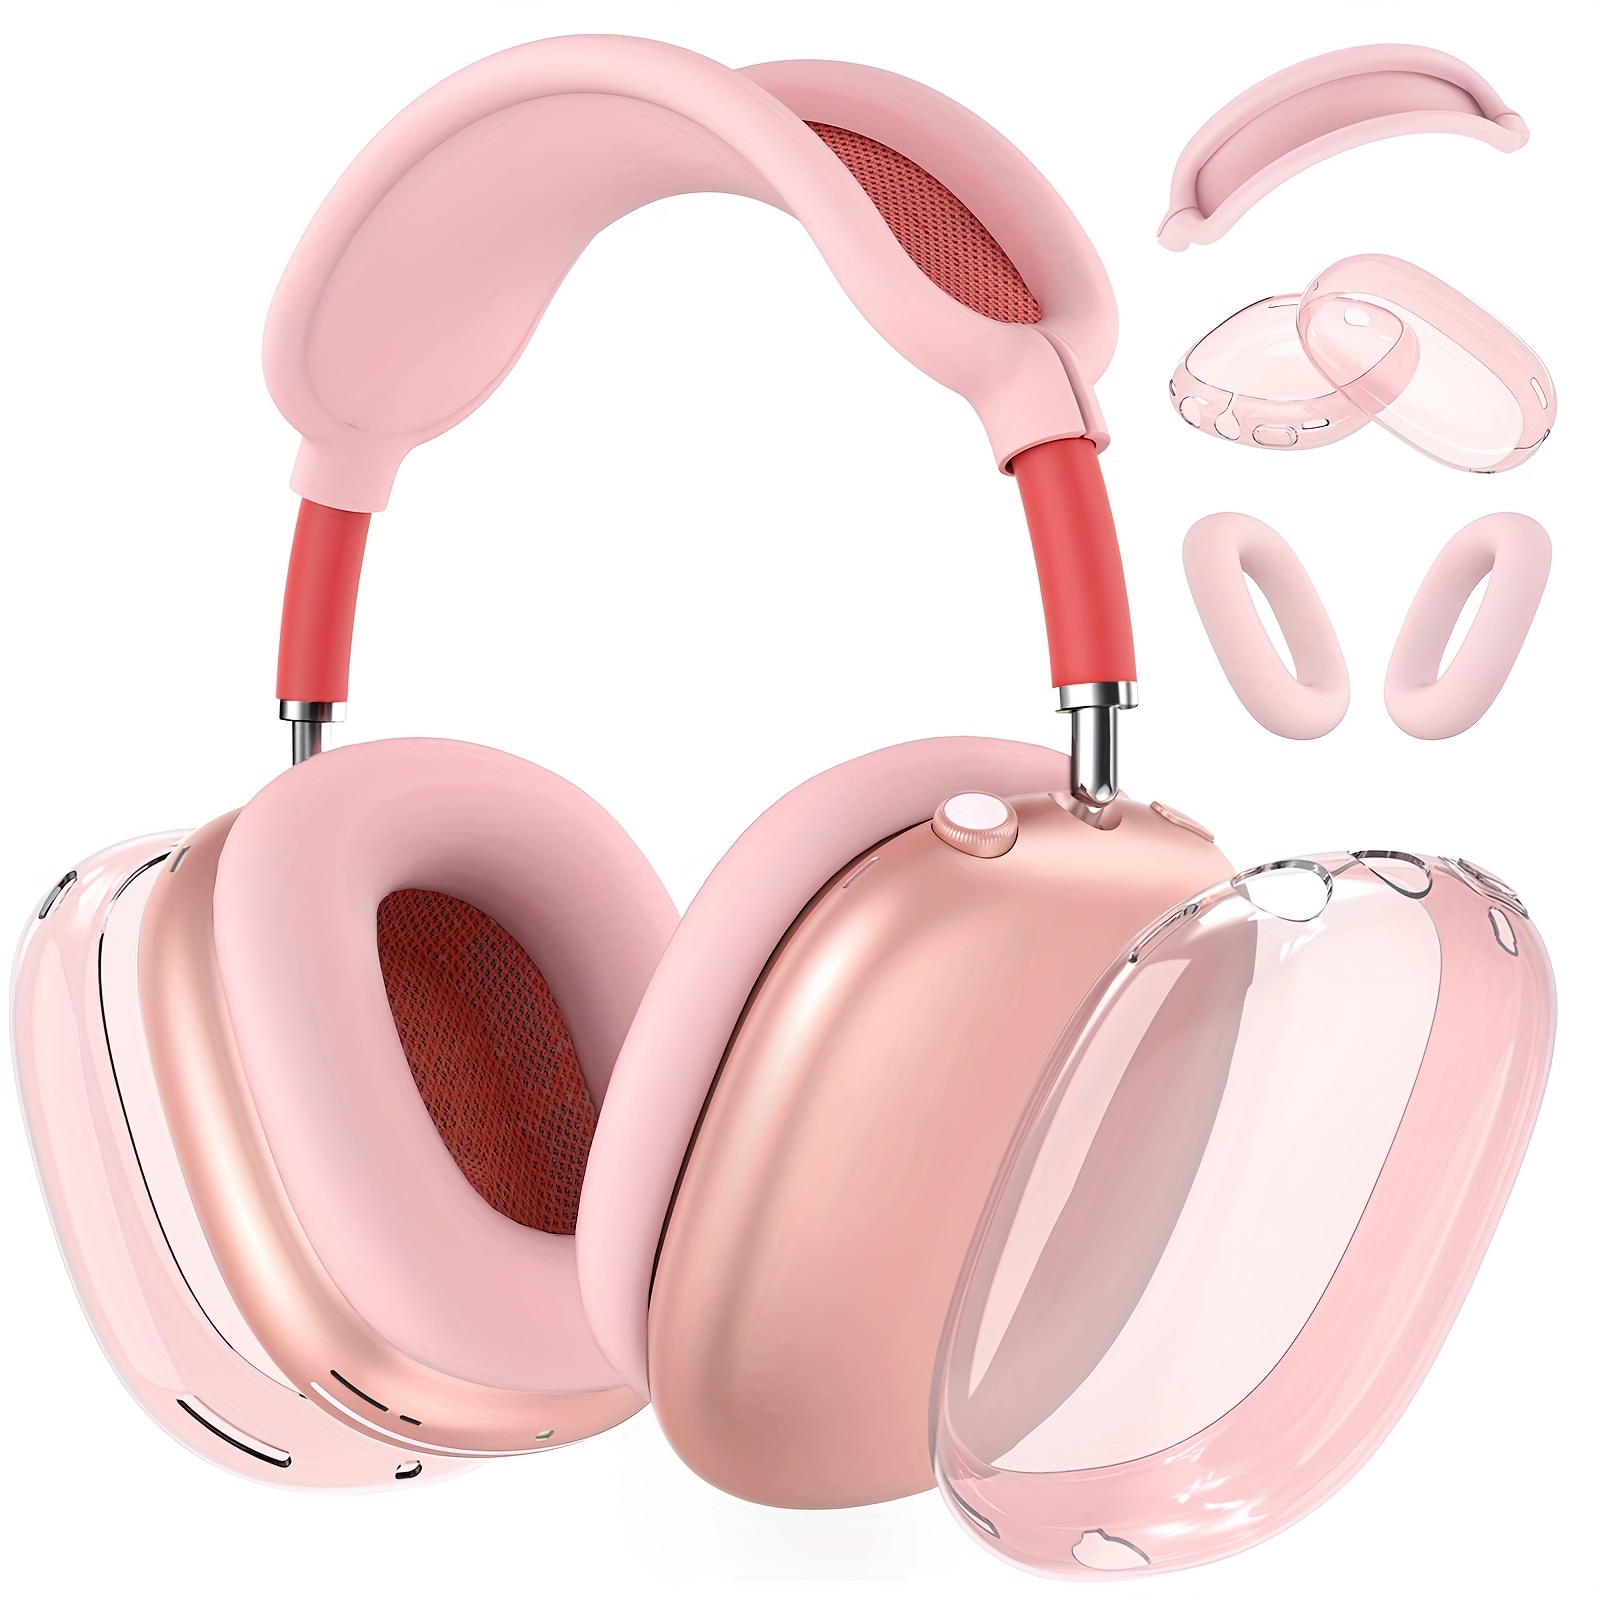 Funda extra grande para auriculares compatible con Beats Studio Pro/para  Beats Solo3/Solo2/Beats Studio3/Picun P26/para Elecder i39 y más  auriculares